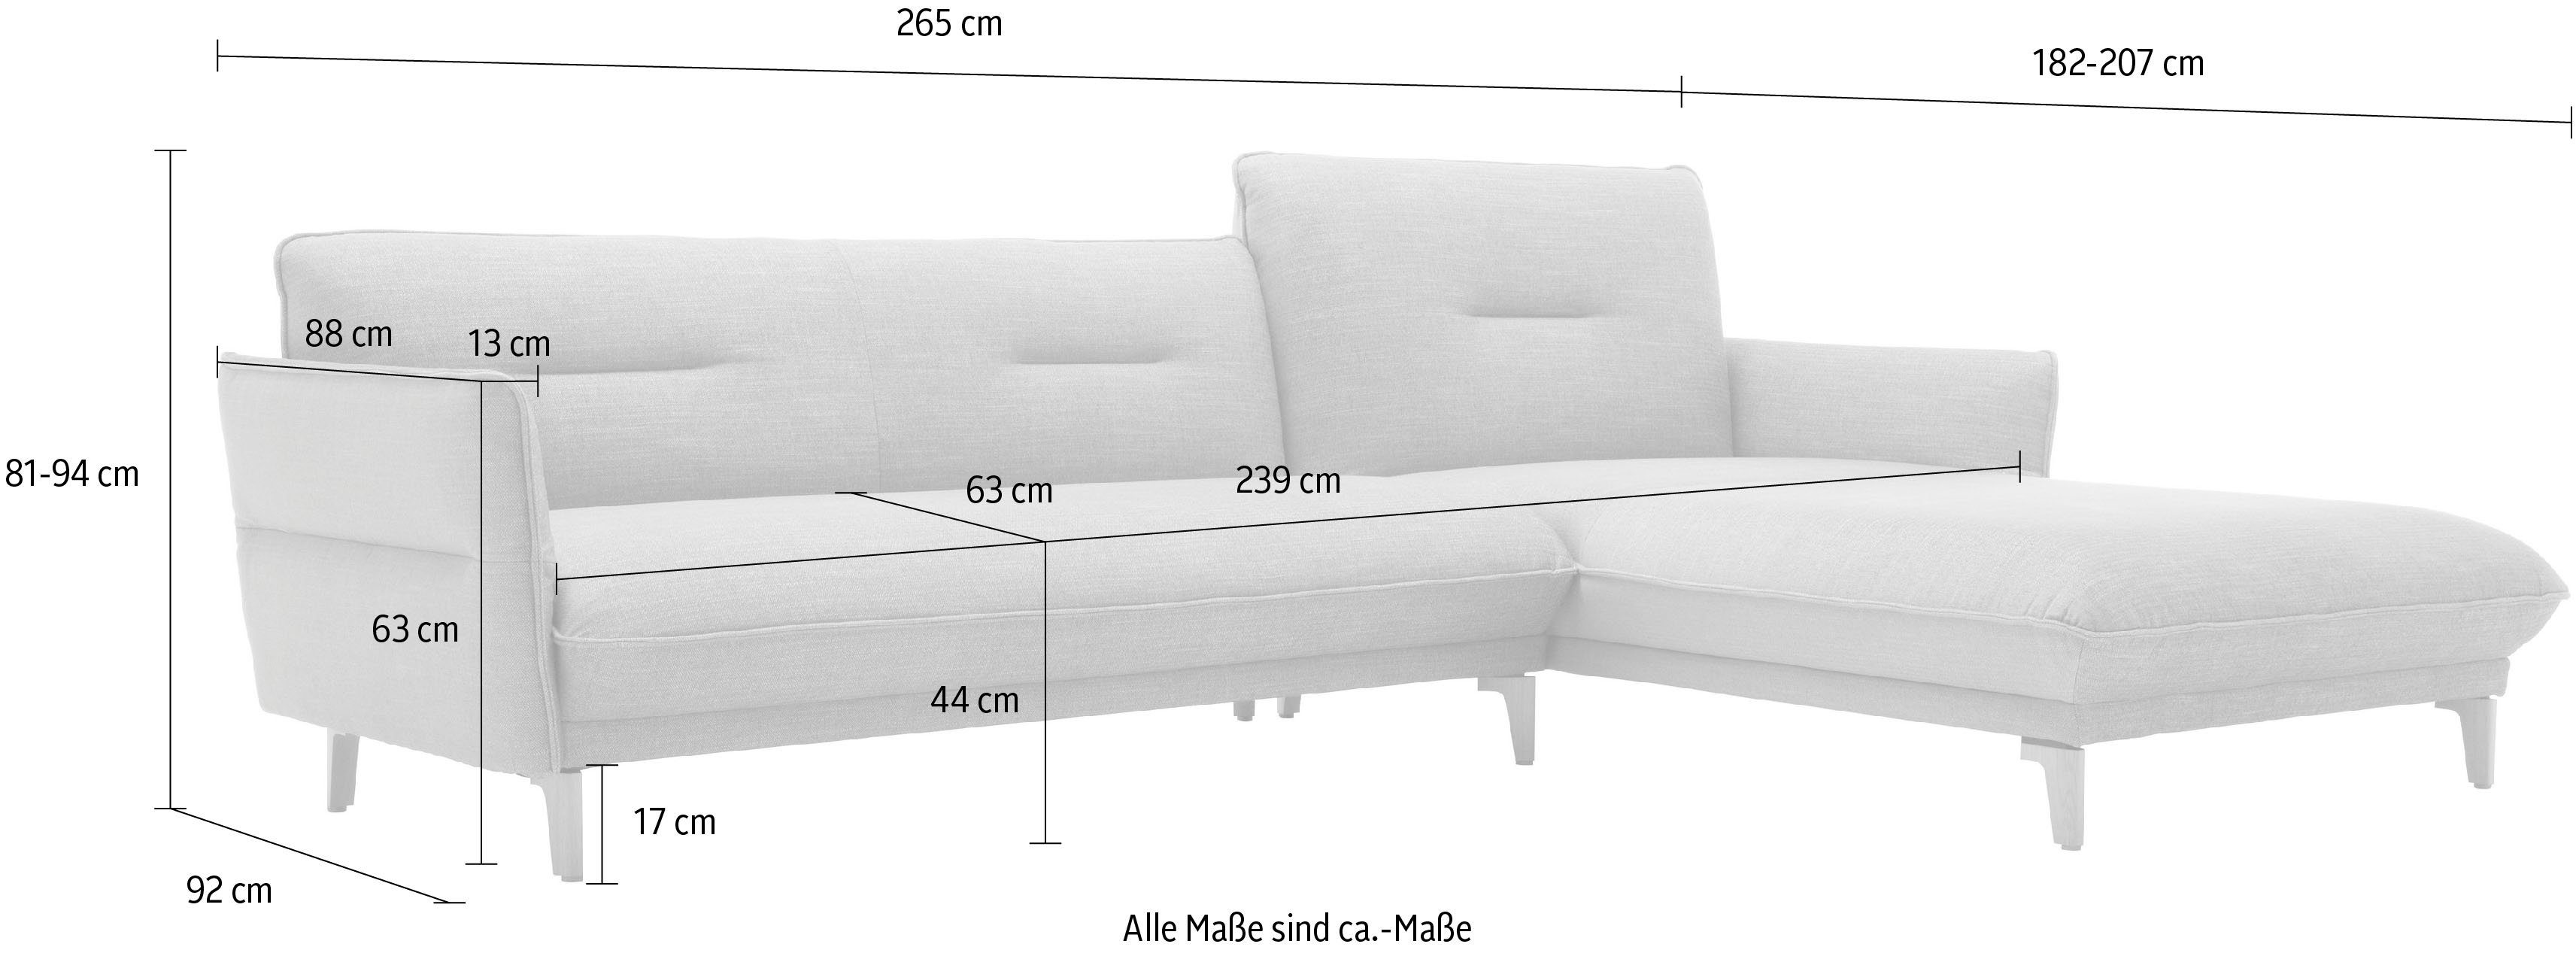 hülsta 062 cm - 265 Rücken ozeanblau Ecksofa sofa mit hs.430, Breite Recamiere Neigefunktion, 72 hoher